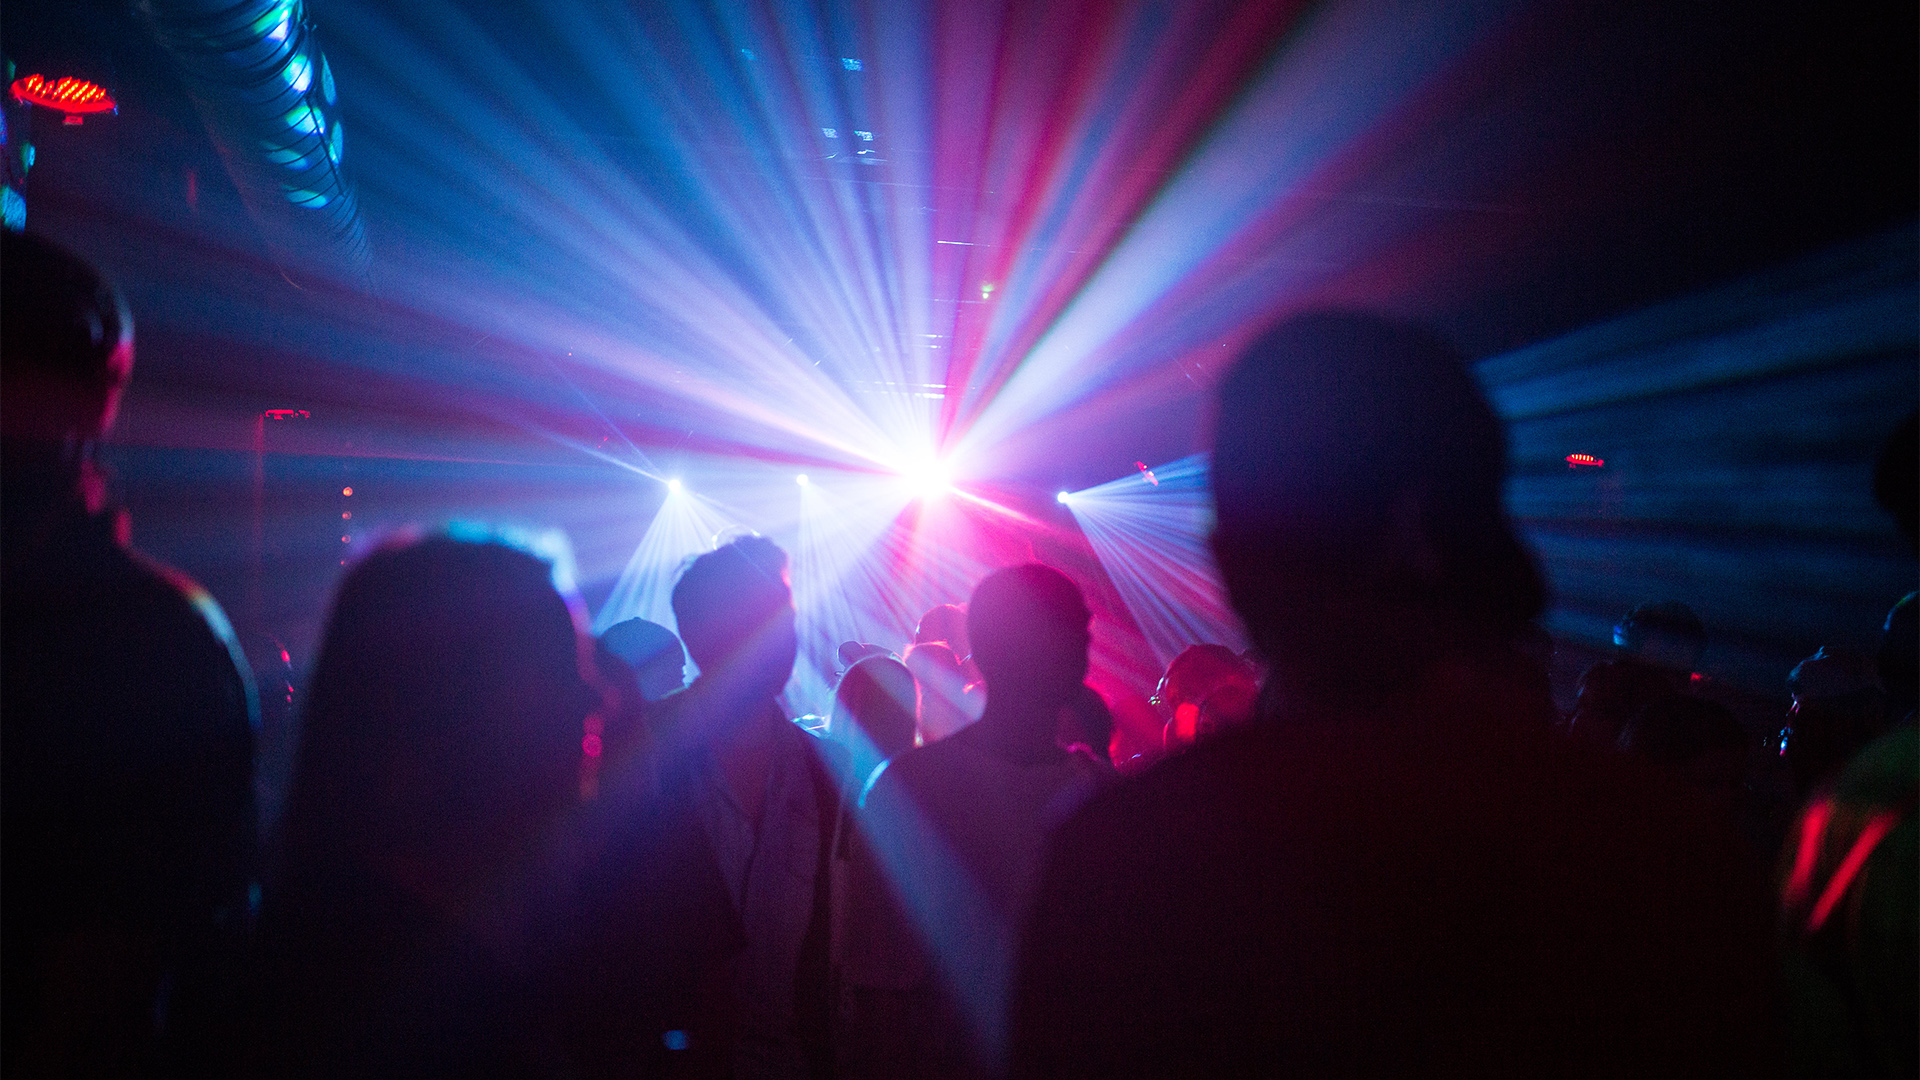 Lichtspiel in einem Nachtclub | dpa